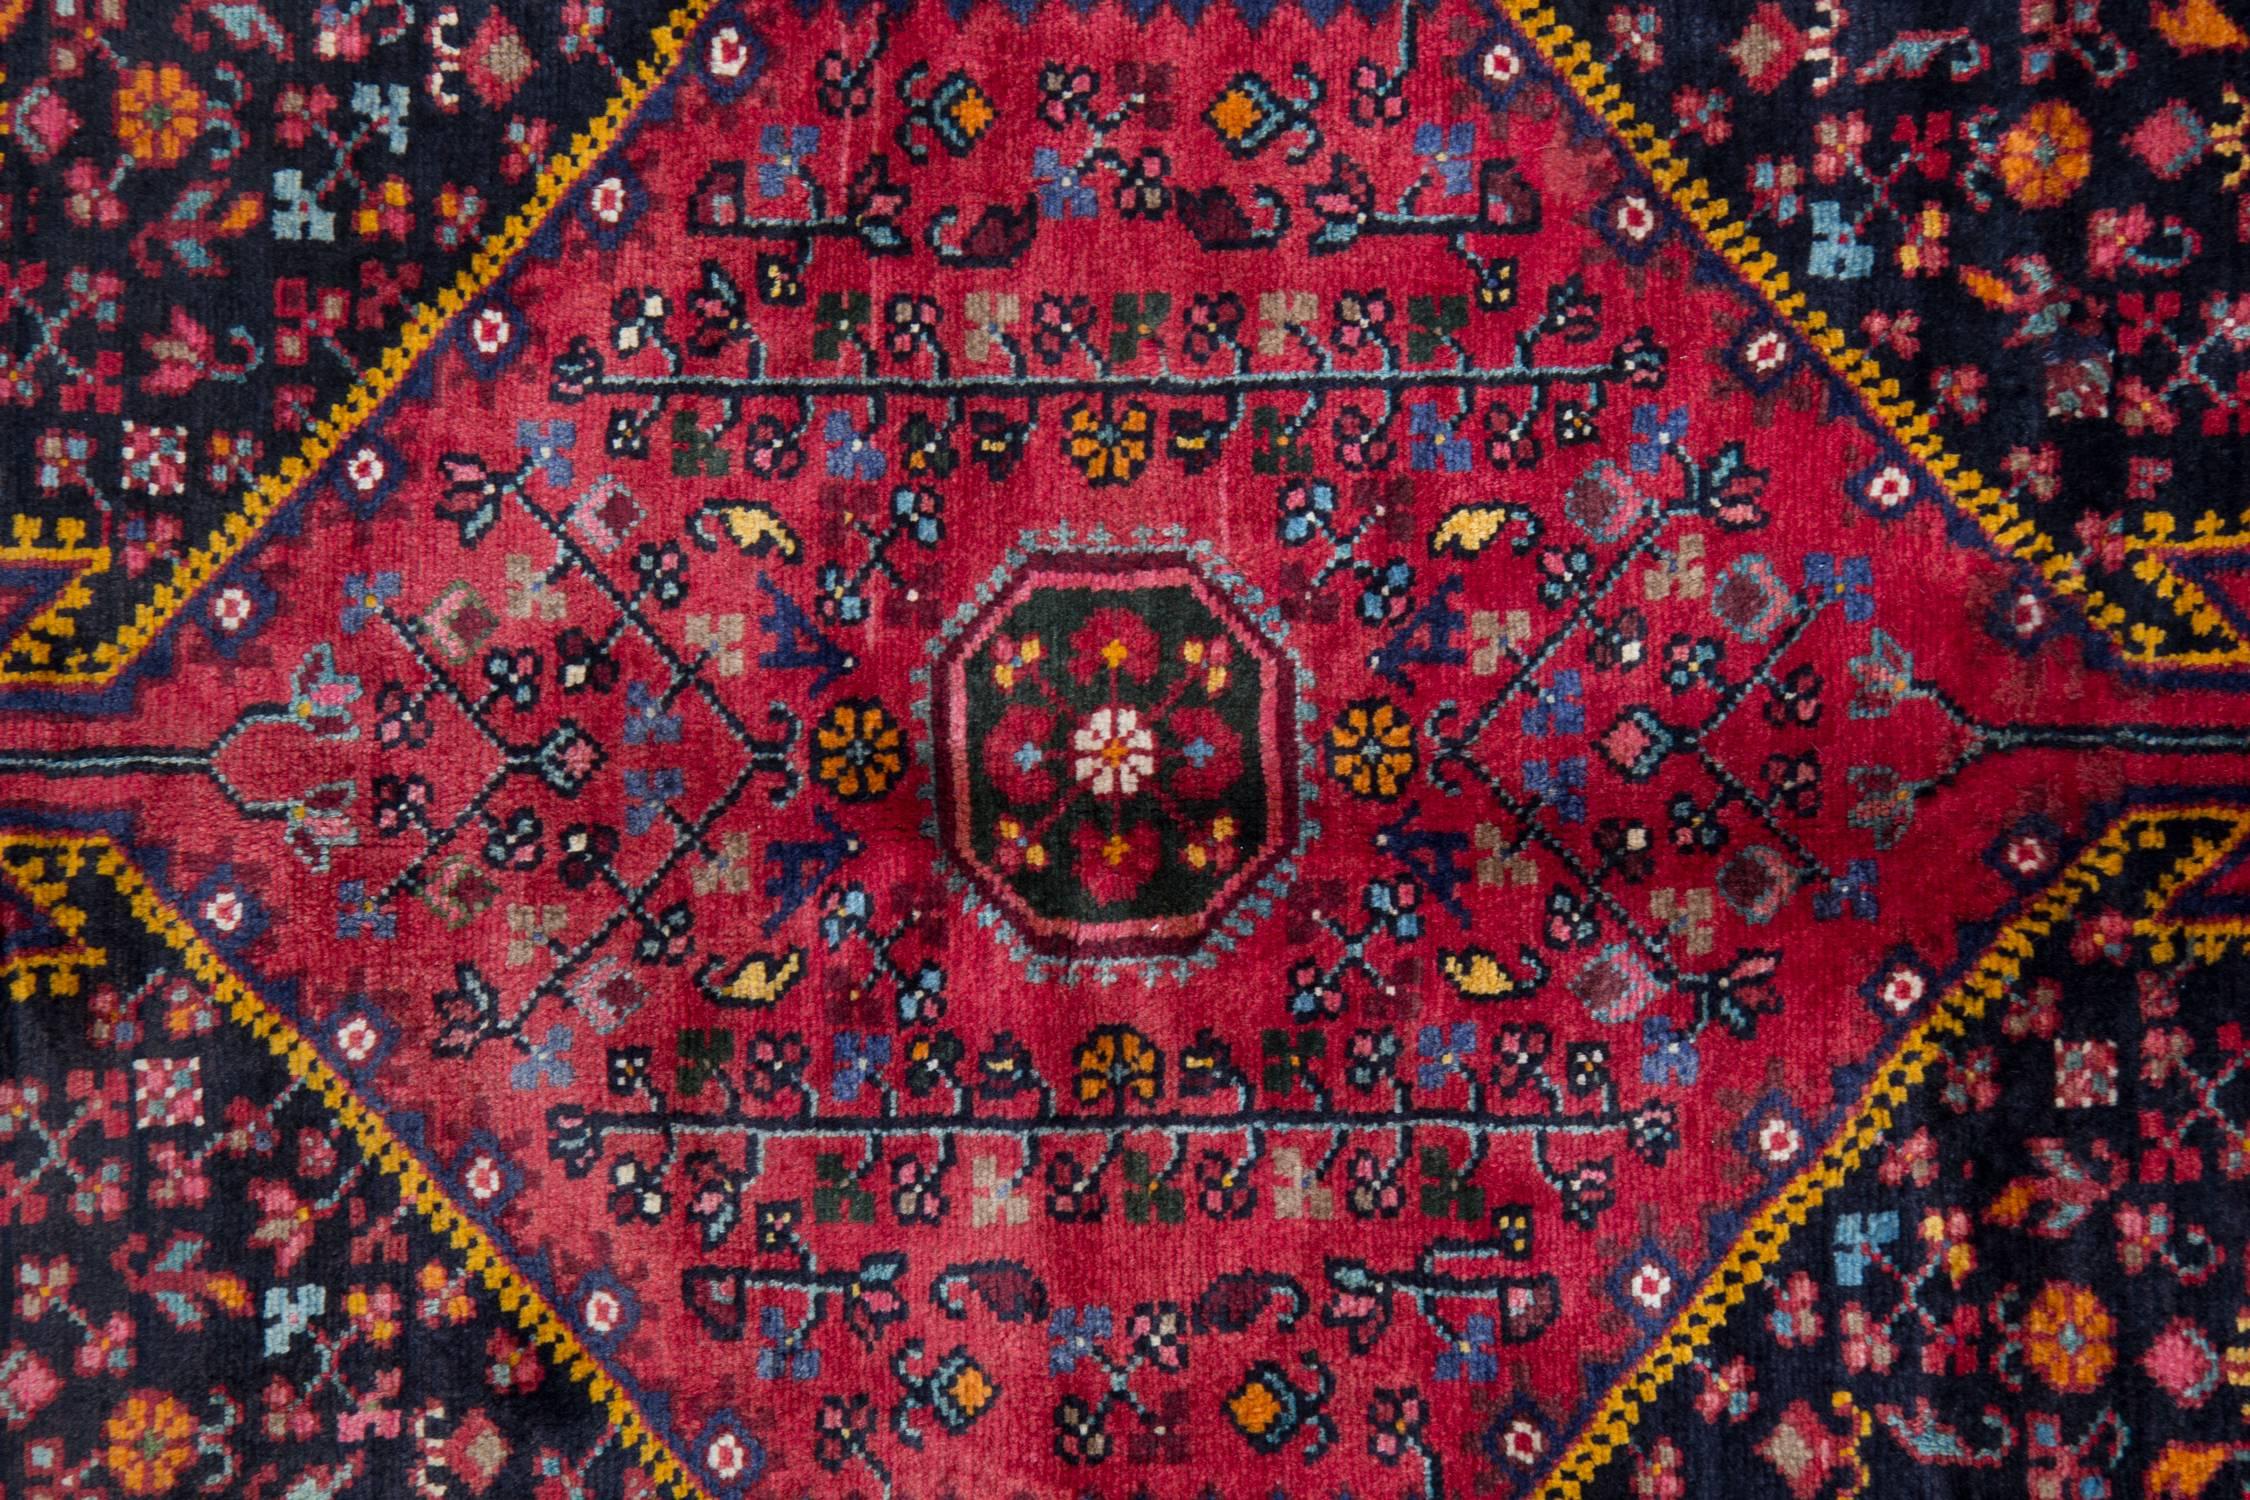 Ce tapis en laine d'un rouge profond a été tissé à la main avec des matériaux d'origine locale en Afghanistan dans les années 1970. Le motif présente un médaillon hexagonal avec des motifs et des dessins tissés de manière complexe, ainsi qu'un motif